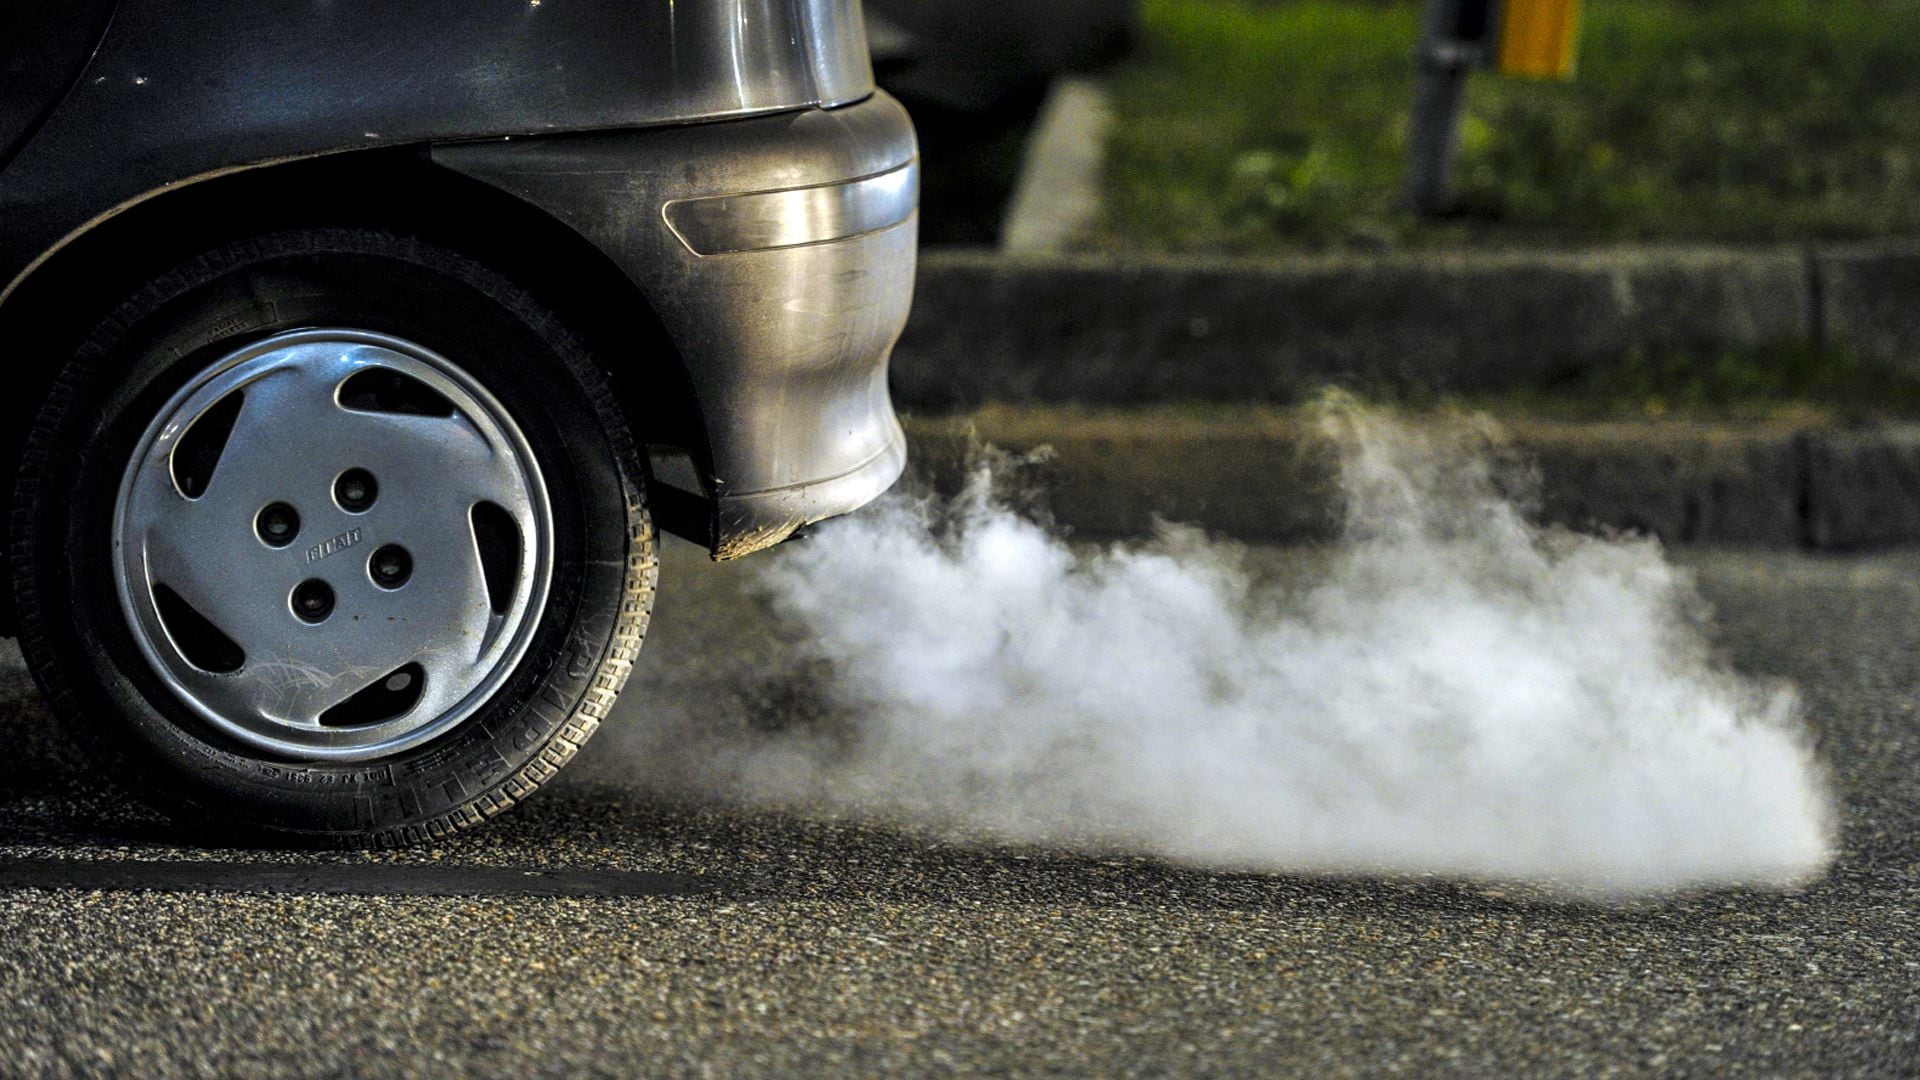 Los autos más antiguos no tienen la tecnología de tratamiento de gases de escape y por lo tanto contaminan más que los modernos